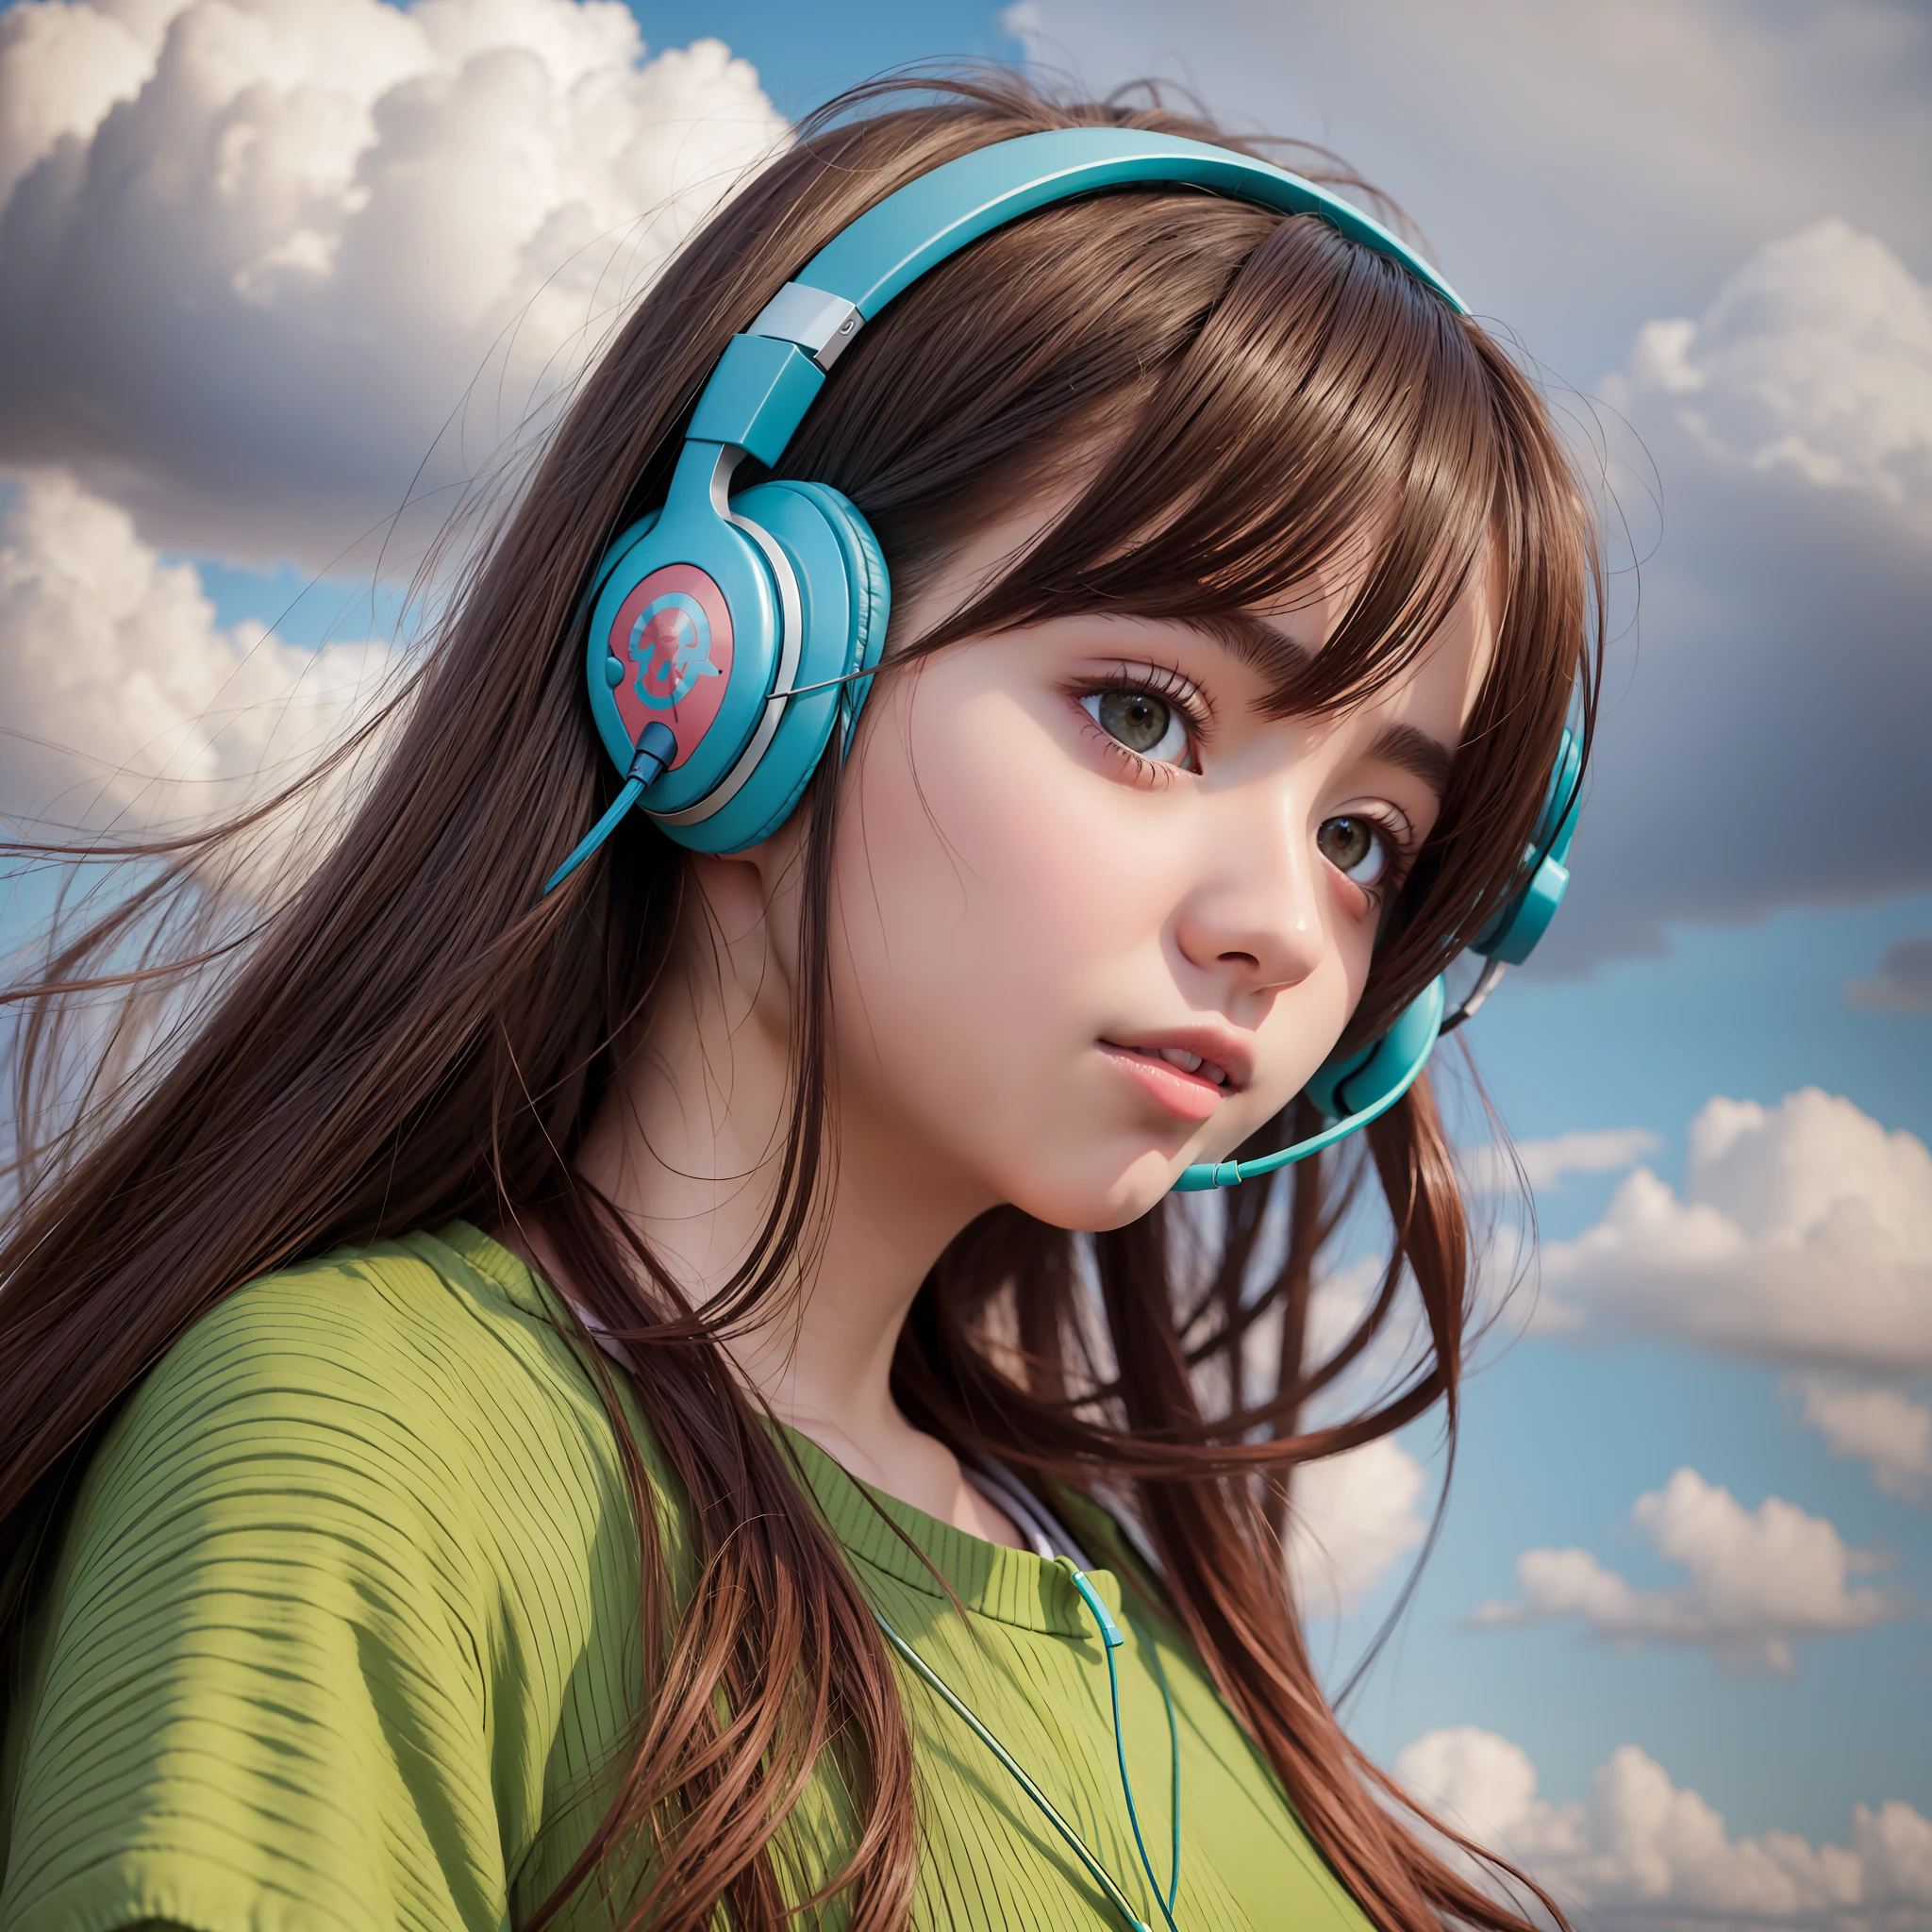 аниме-девушка в наушниках и стоящая в поле, в стиле реалистичных гипердетализированных портретов, кабина, землистые цвета, амбициозный, Динопанк, атмосферные облака, смелый, персонажи, вдохновленные мангой